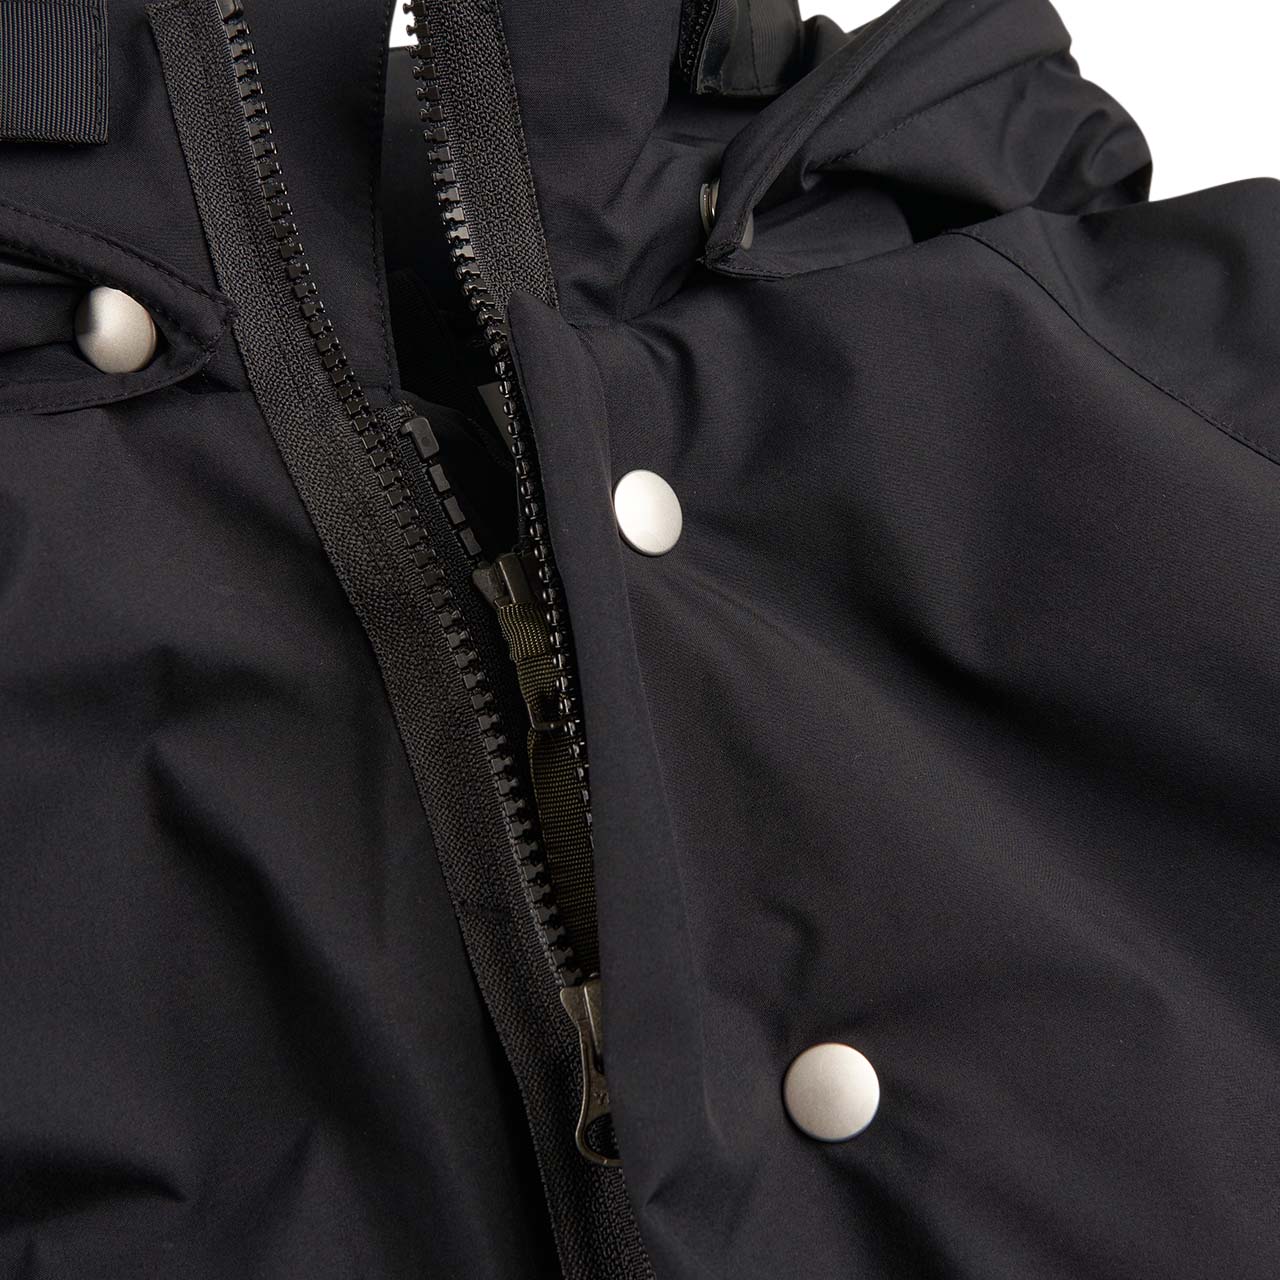 acronym j95-pl modular liner jacket (black)